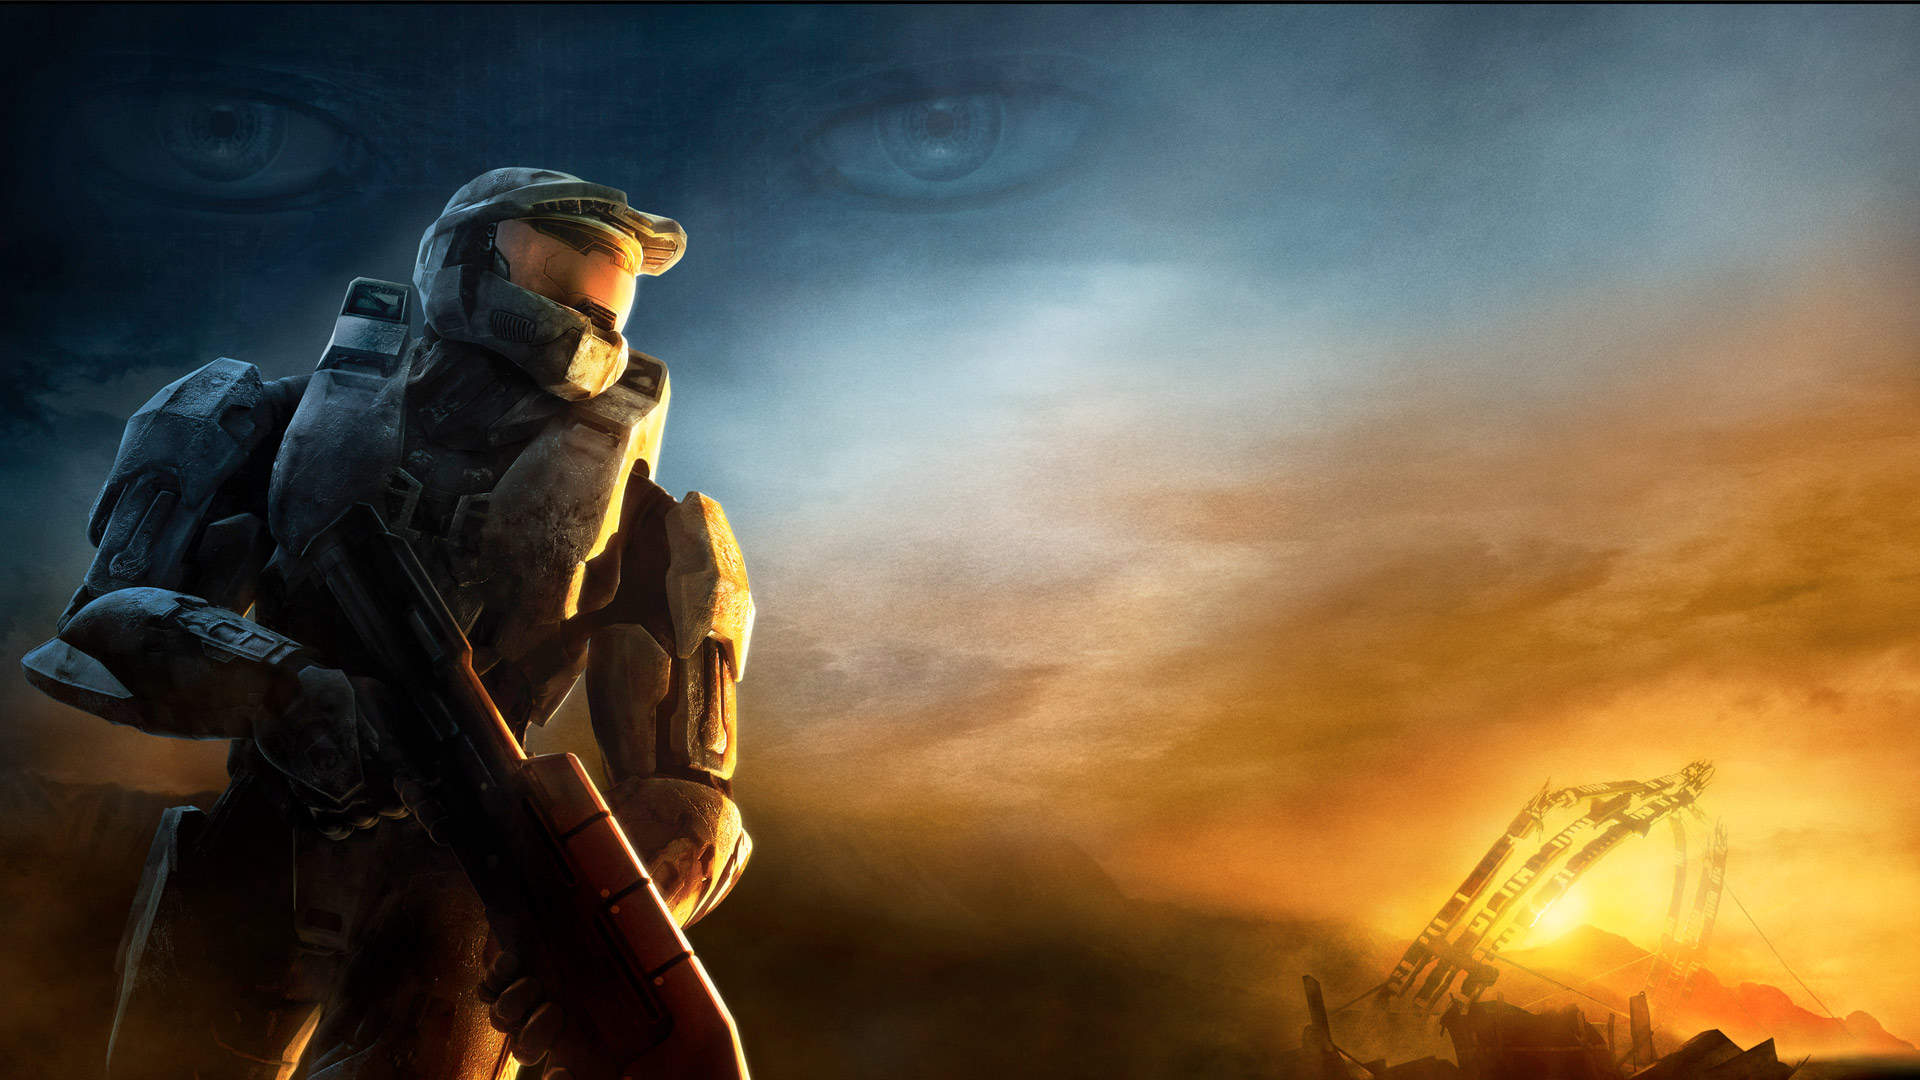 Halo 3 Wallpaper Cover